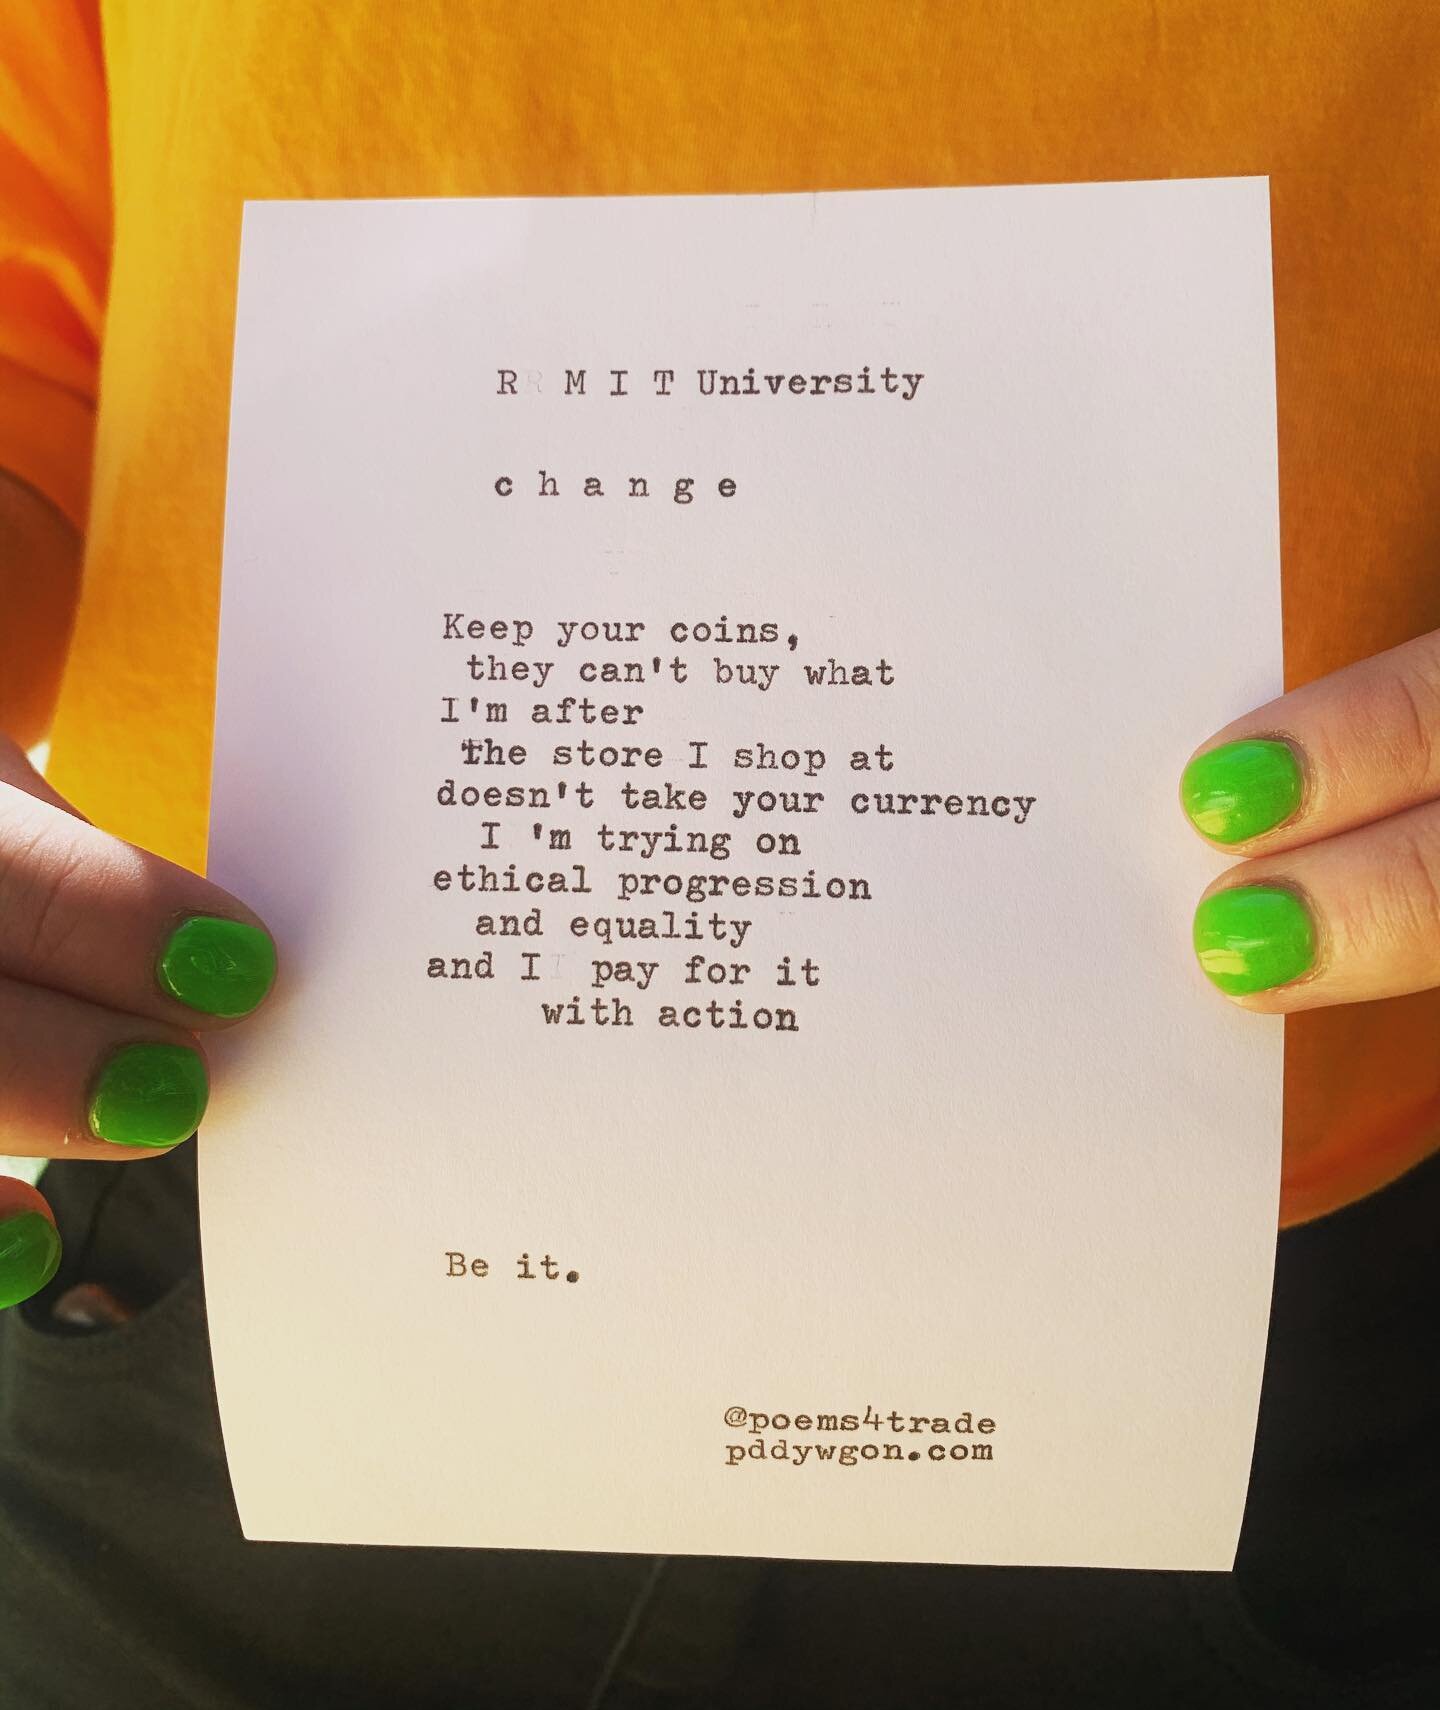 Change.
&bull;
@rmituniversity 
&bull;
#change #poem #poetry #typewriter #art #greennails #colour